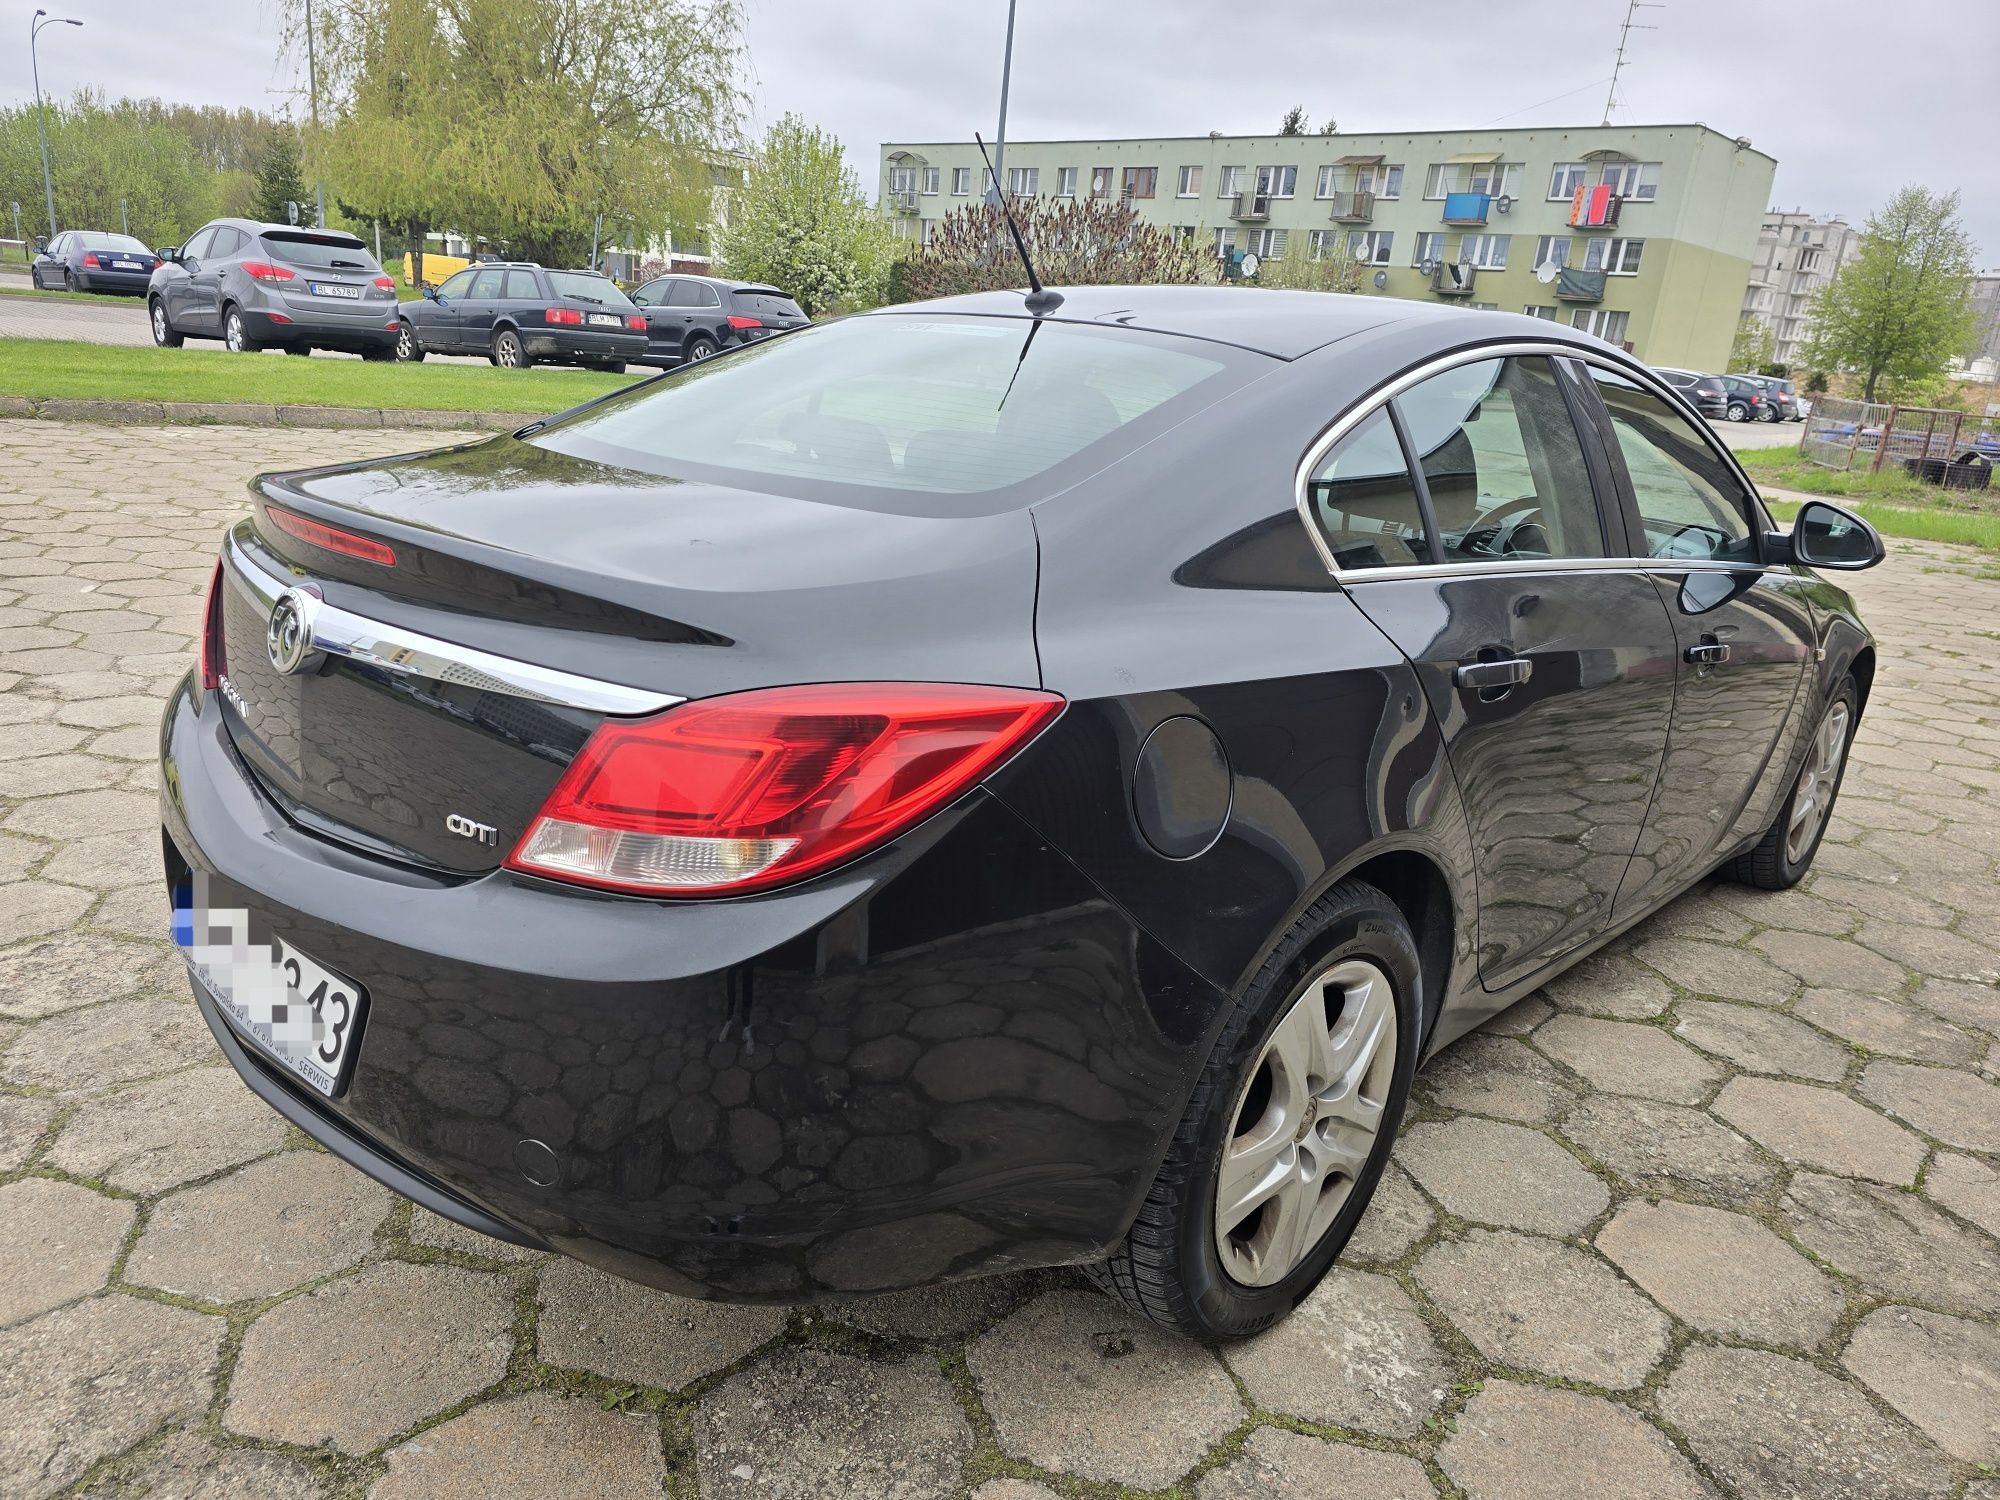 Opel insignia 2.0 cdti zarejestrowany anglik